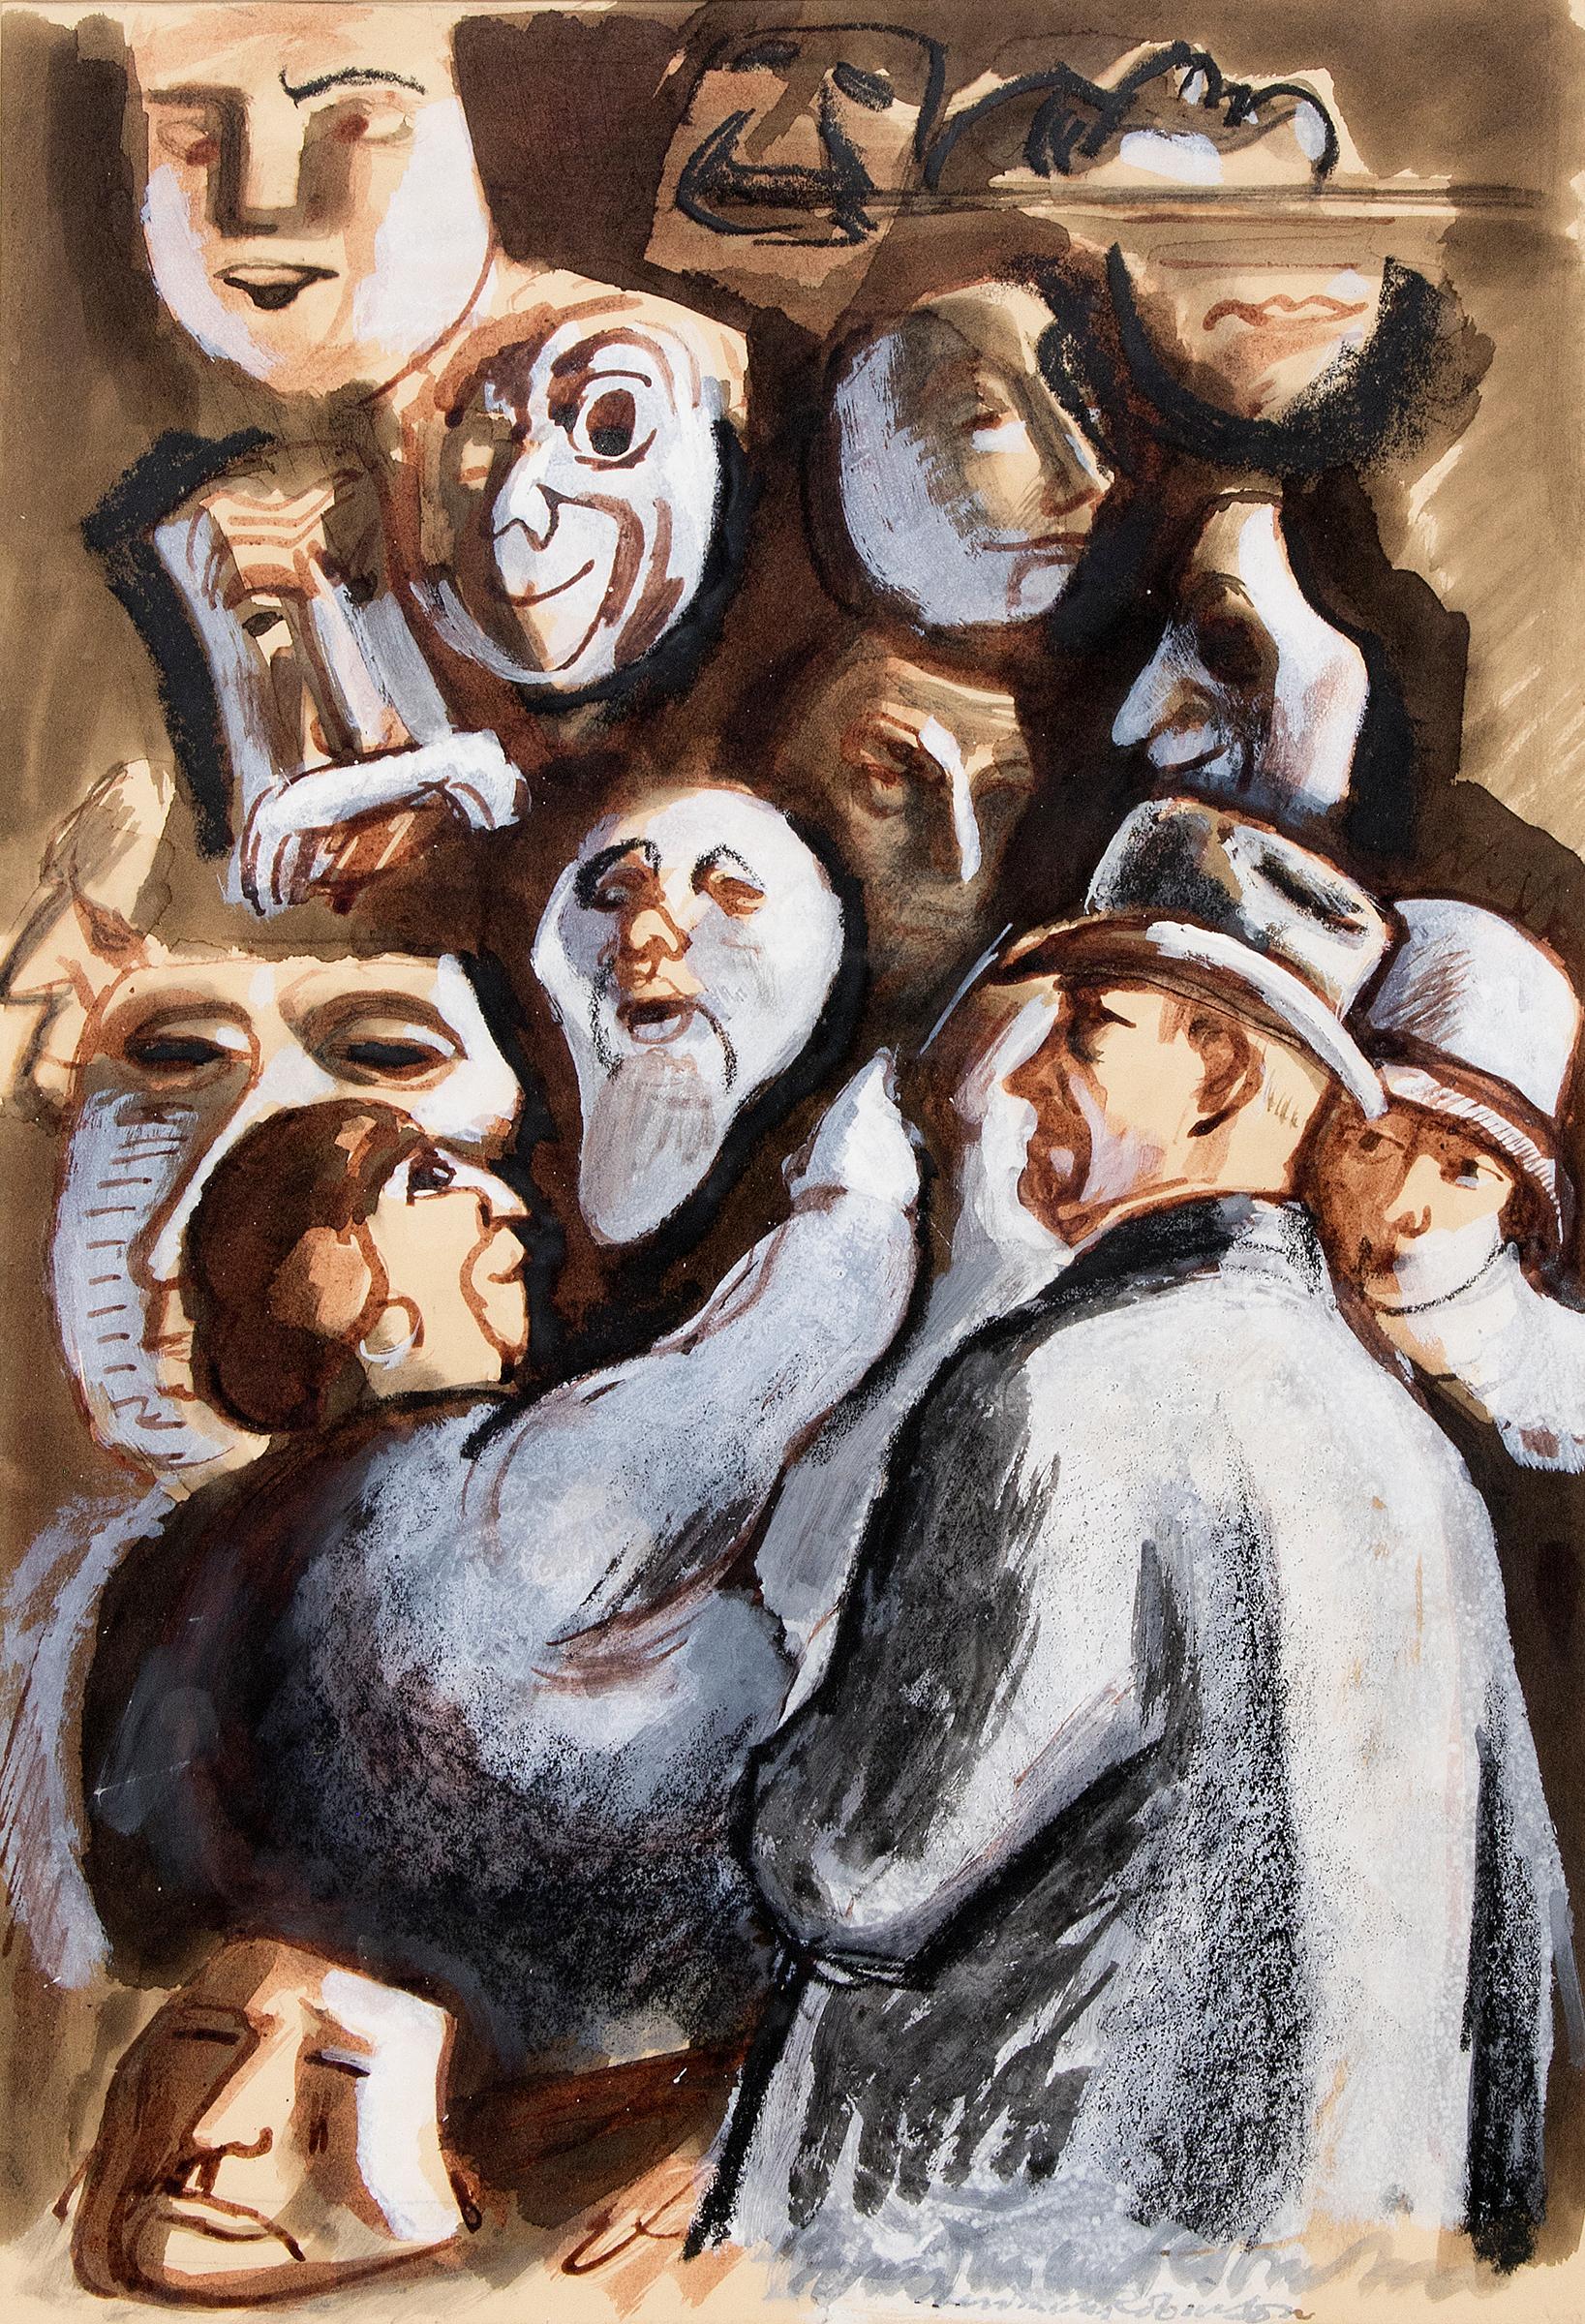 "The Vendor of Masques", peinture moderniste des années 1930 de Boardman Robinson (1876-1952) représentant un étalage de vendeurs de masques avec des personnages masculins et féminins (probablement dans un cirque à Colorado Springs), peinte en